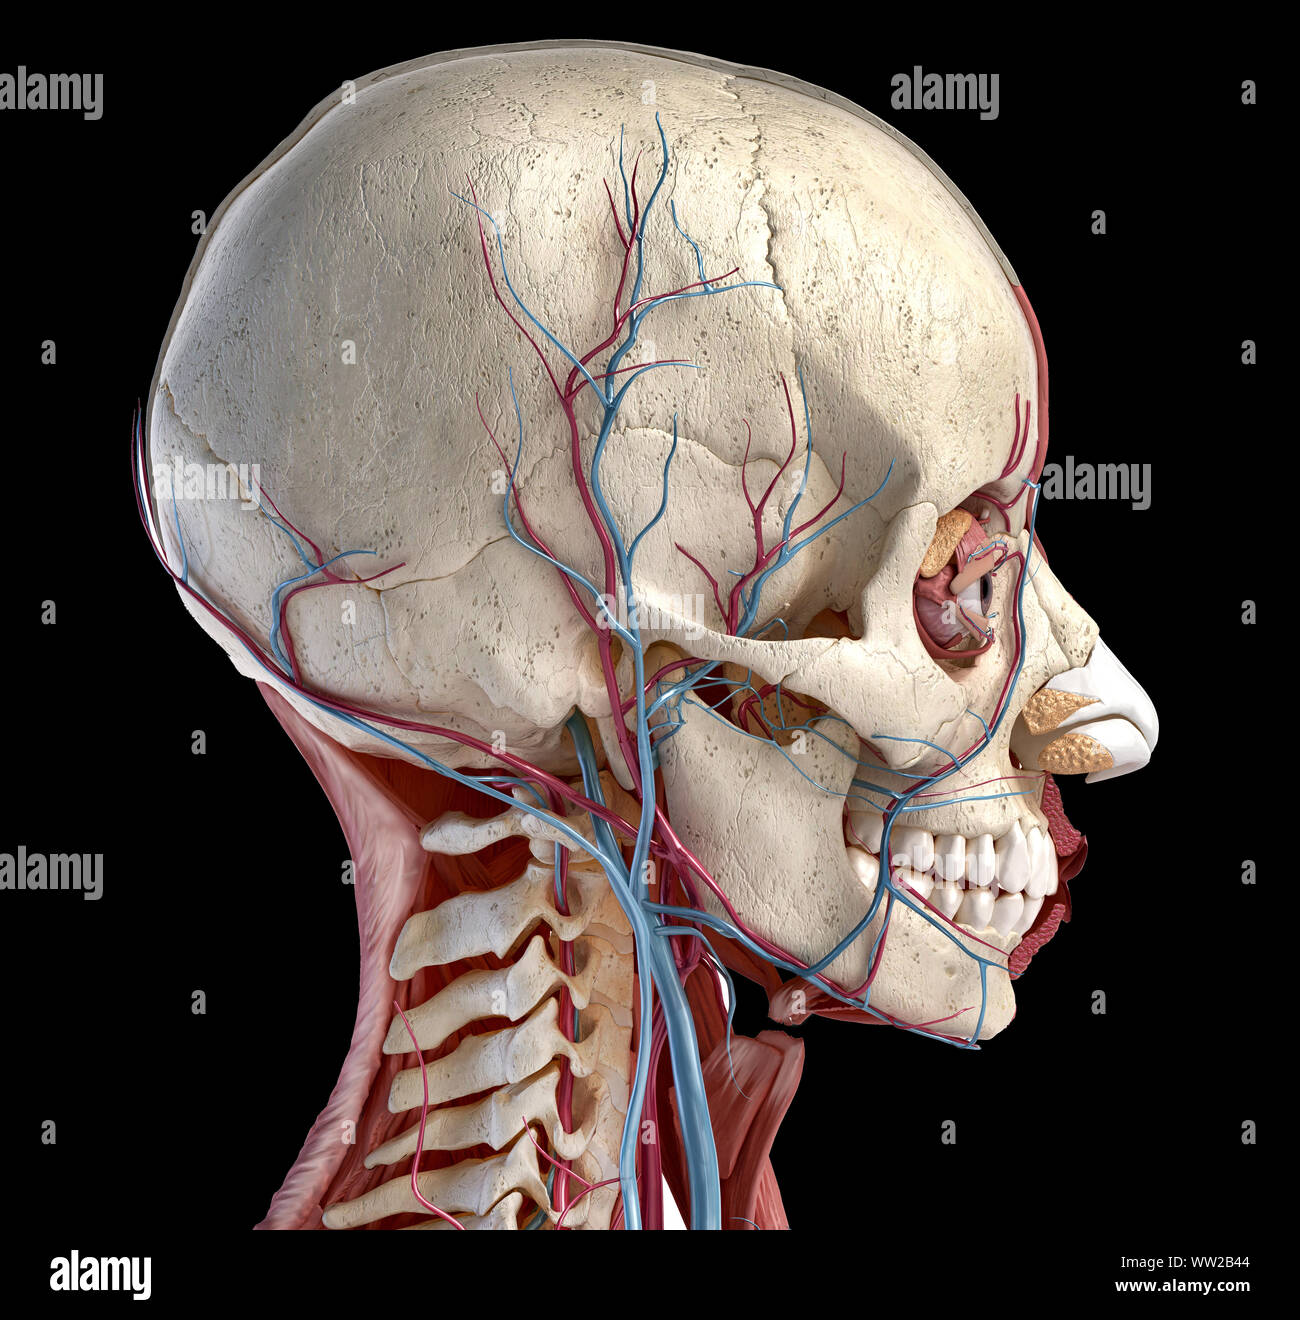 Menschliche 3D-Anatomie Illustration, Schädel, Muskeln, Augen und Blutgefäße. Von der Seite. Auf schwarzem Hintergrund. Stockfoto